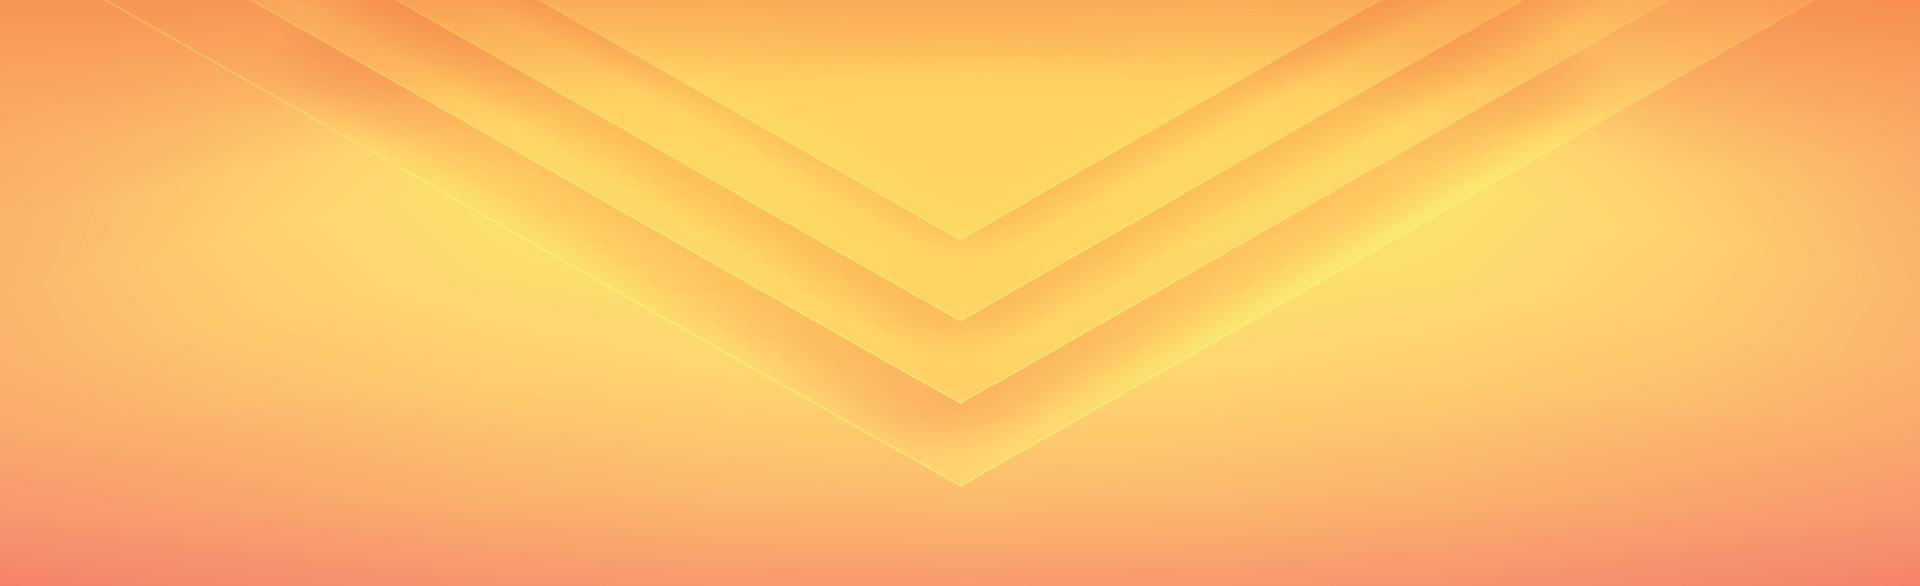 gelb - orange Panoramahintergrund mit Dreiecken - Vektor